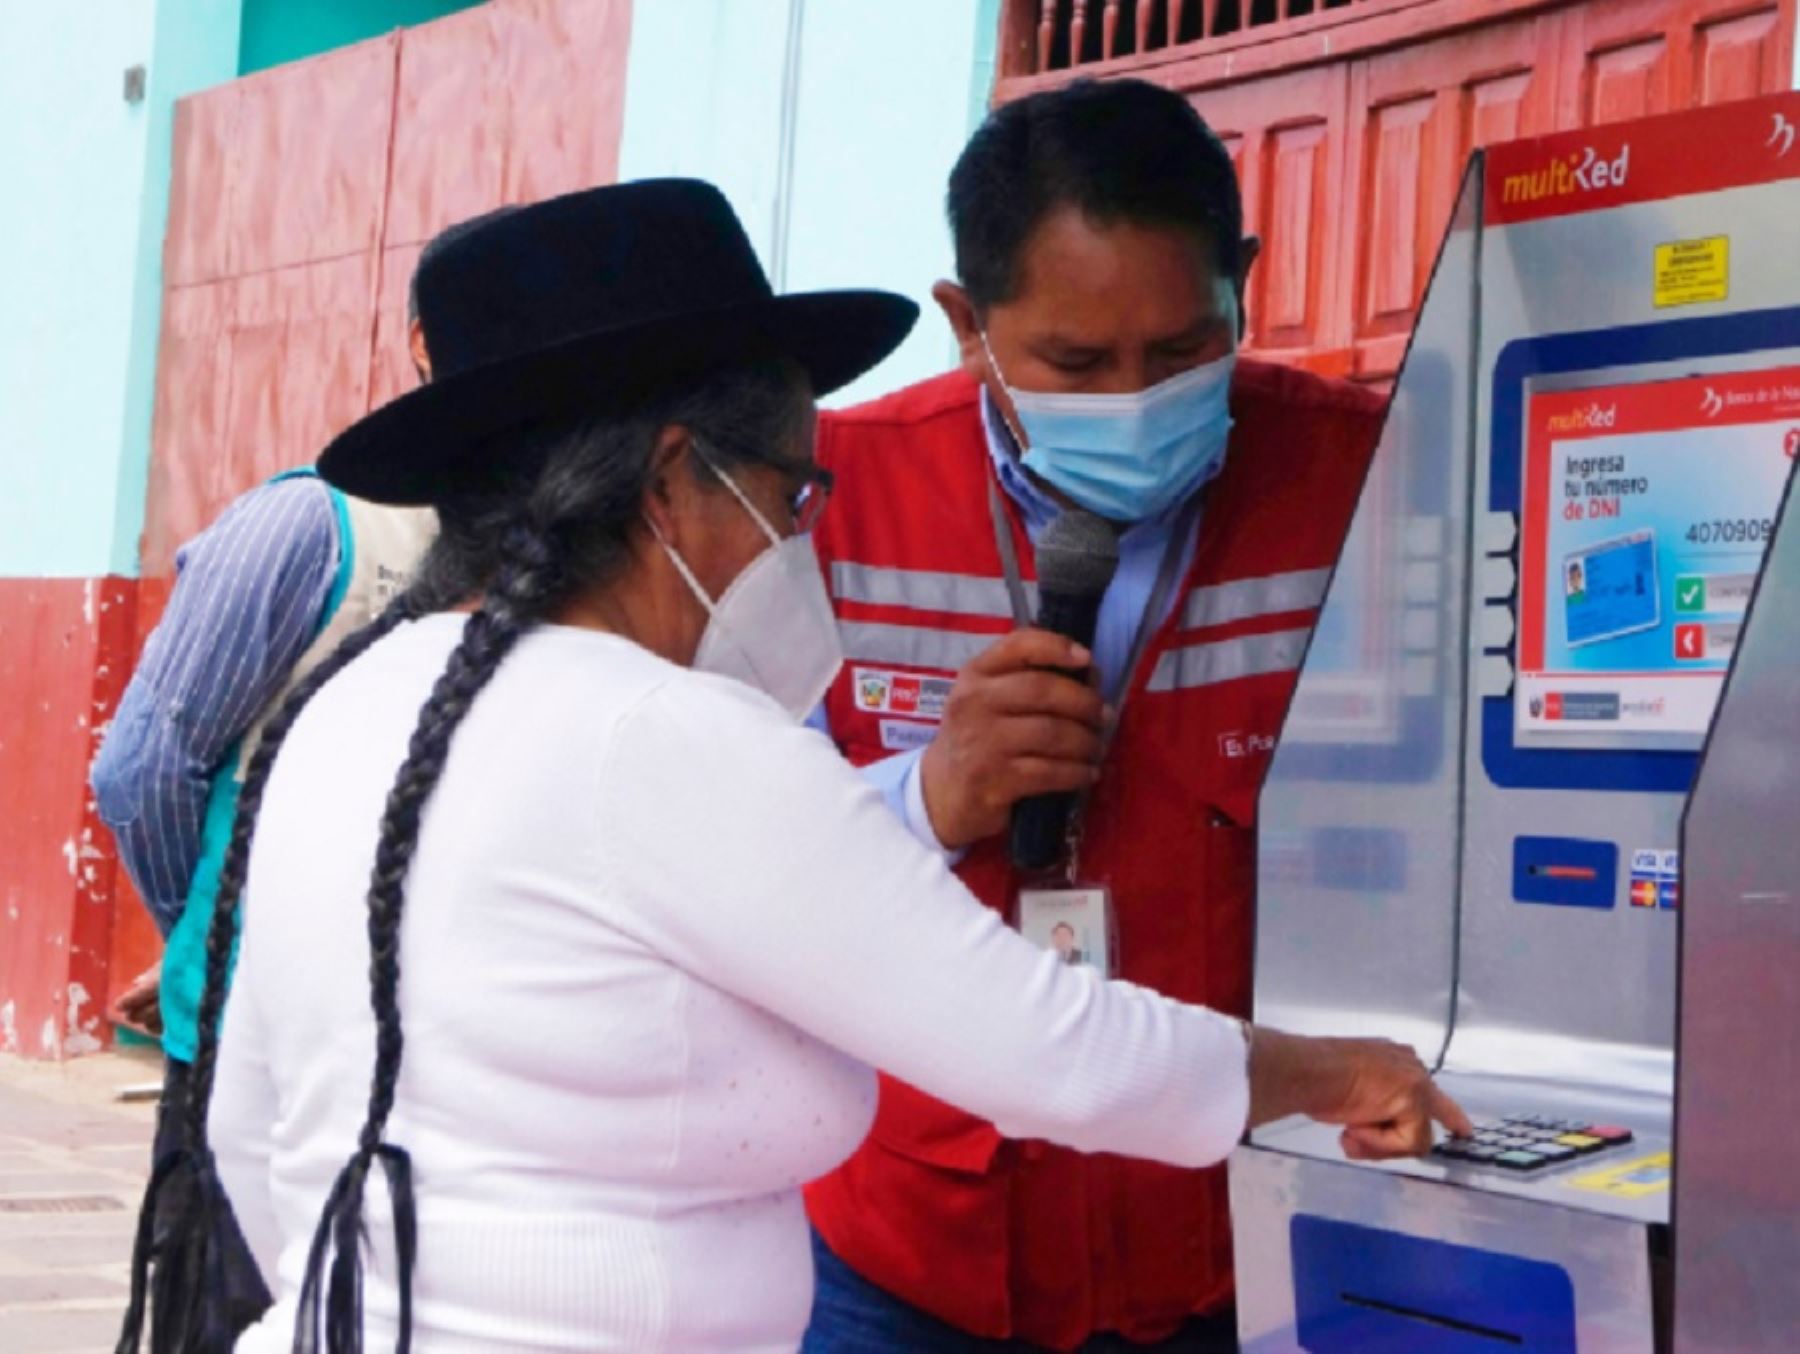 El Programa Nacional de Asistencia Solidaria Pensión 65 del Ministerio de Desarrollo e Inclusión Social, lanzó hoy en el distrito de Huanta, región Ayacucho, la implementación del Plan de Inclusión Financiera. Foto: Midis/Pensión 65